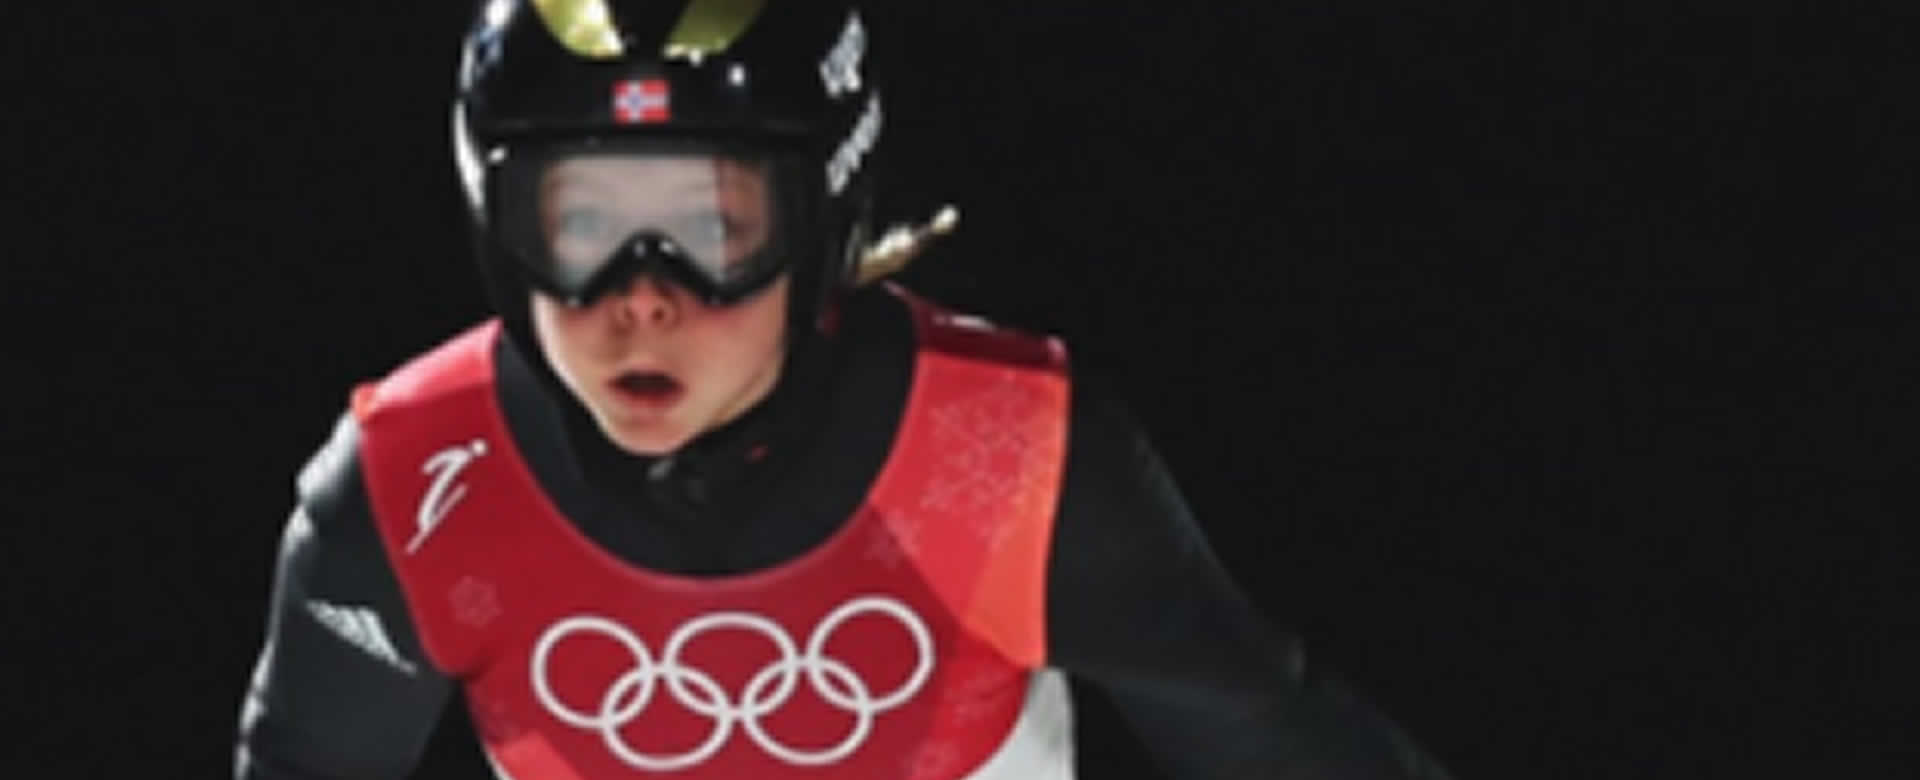 Noruega obtiene oro con salto de 110 metros en olimpiadas de invierno